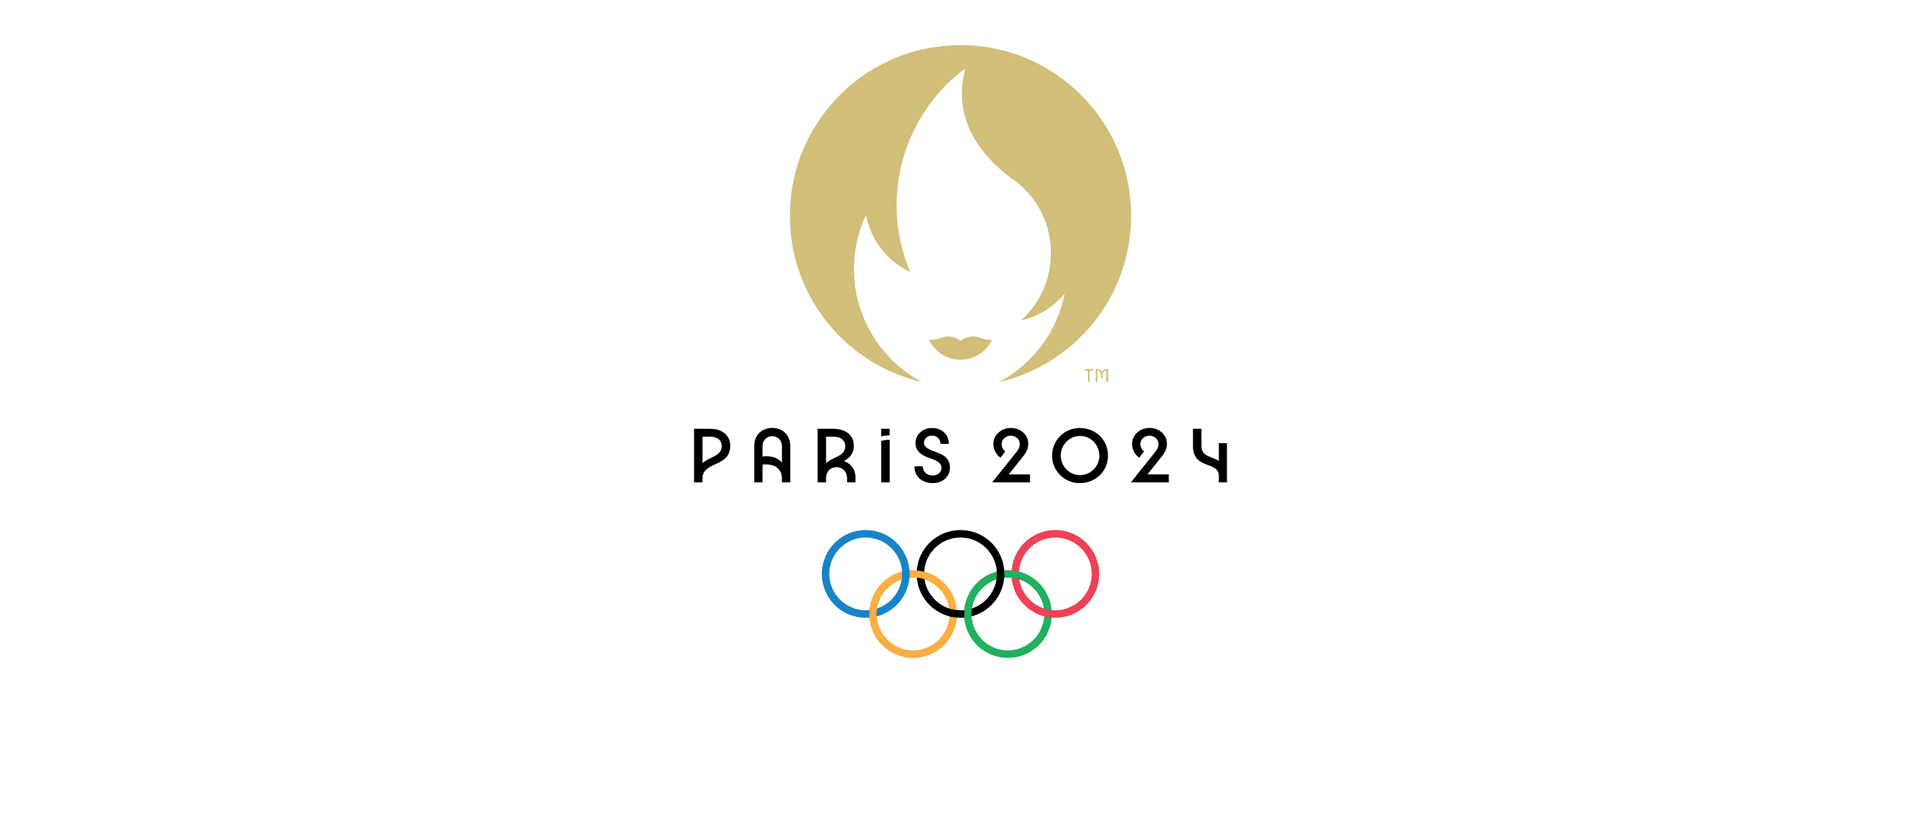 Олимпийские игры в Париже 2024. Олимпийских игр–2024 в Париже лого. Логотип олимпиады.